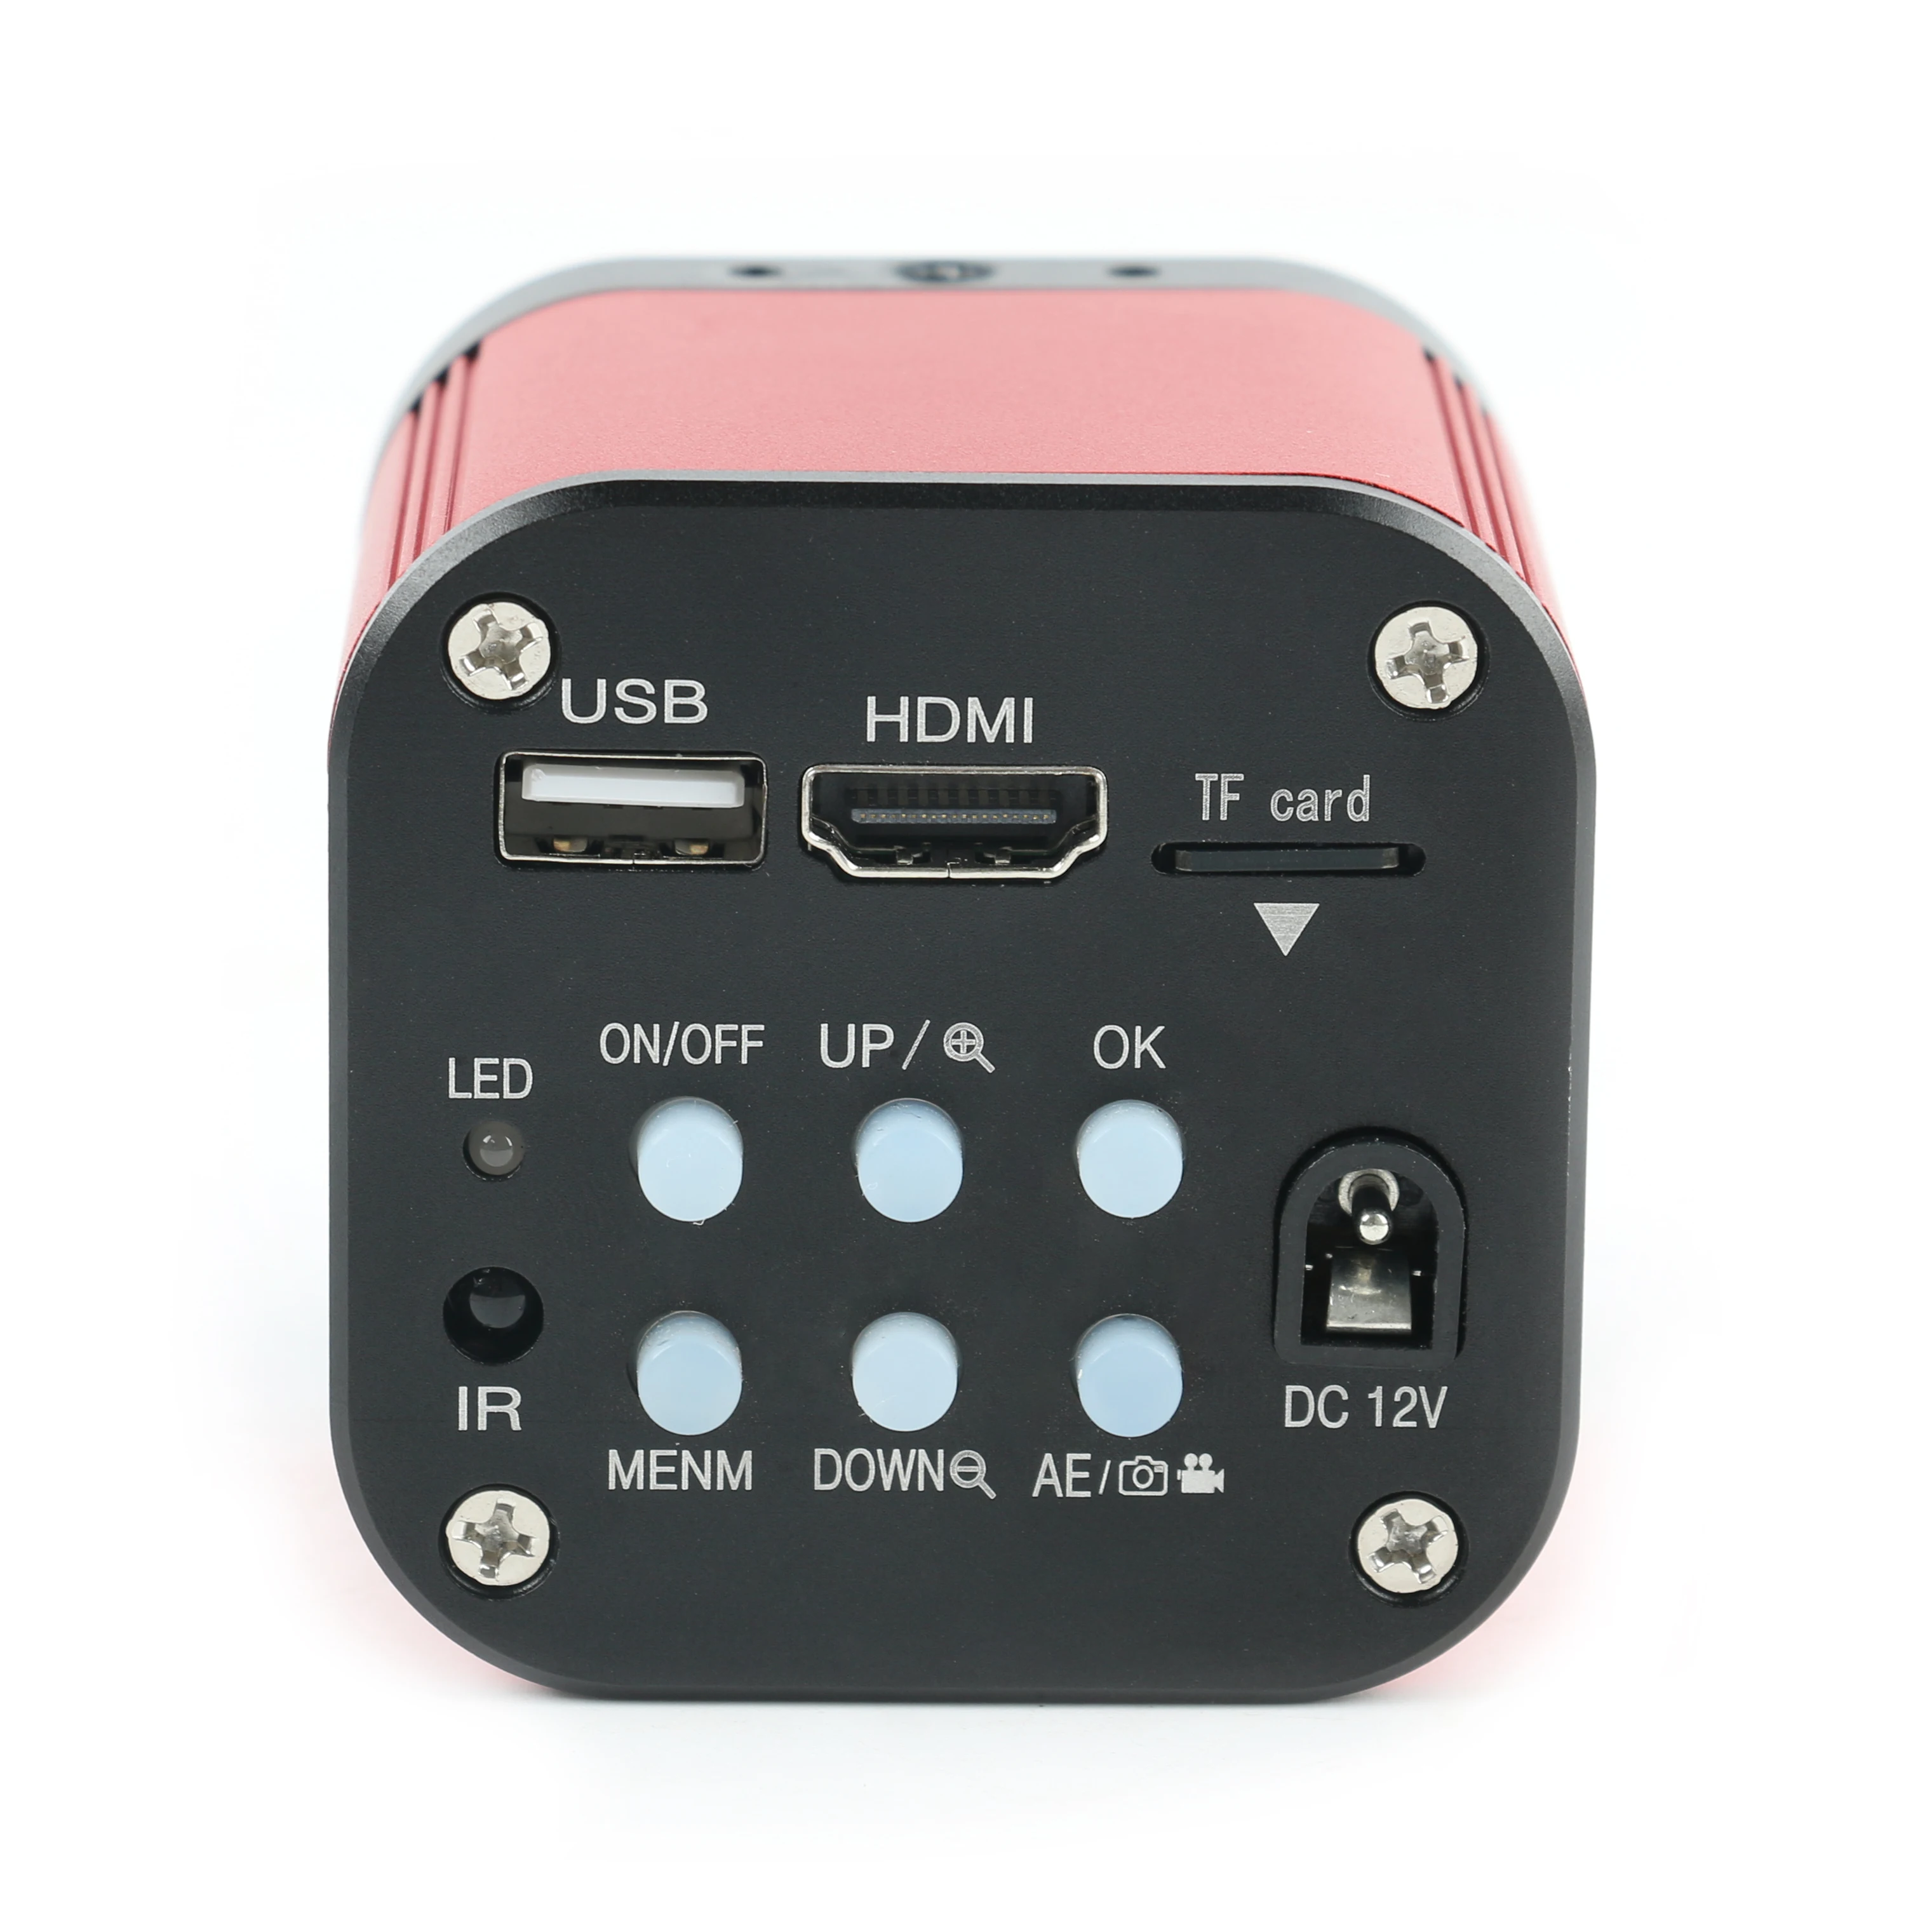 HDMI 4K 1080P USB SONY IMX337 C крепление электронный цифровой промышленный видео микроскоп камера для ремонт телефона pcb пайки